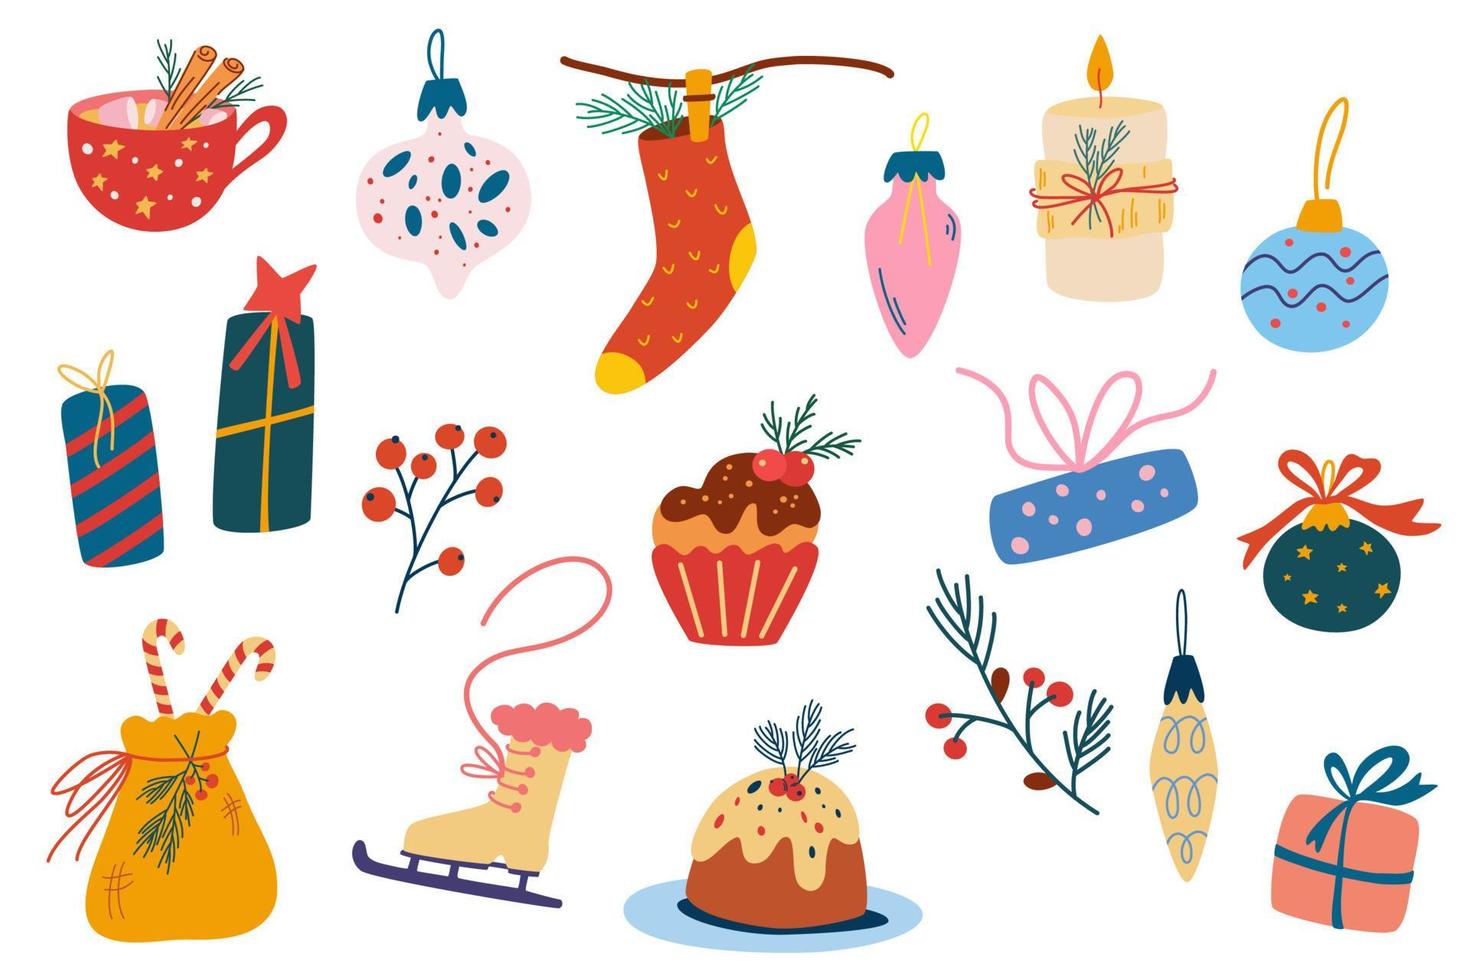 kerst elementen instellen. kerstboom, speelgoed, geschenken, snoep, slingers en dennentakken. vakantiedecoratie voor gelukkig nieuwjaar. set winterartikelen. voor kaarten, uitnodigingen, scrapbooking. vector